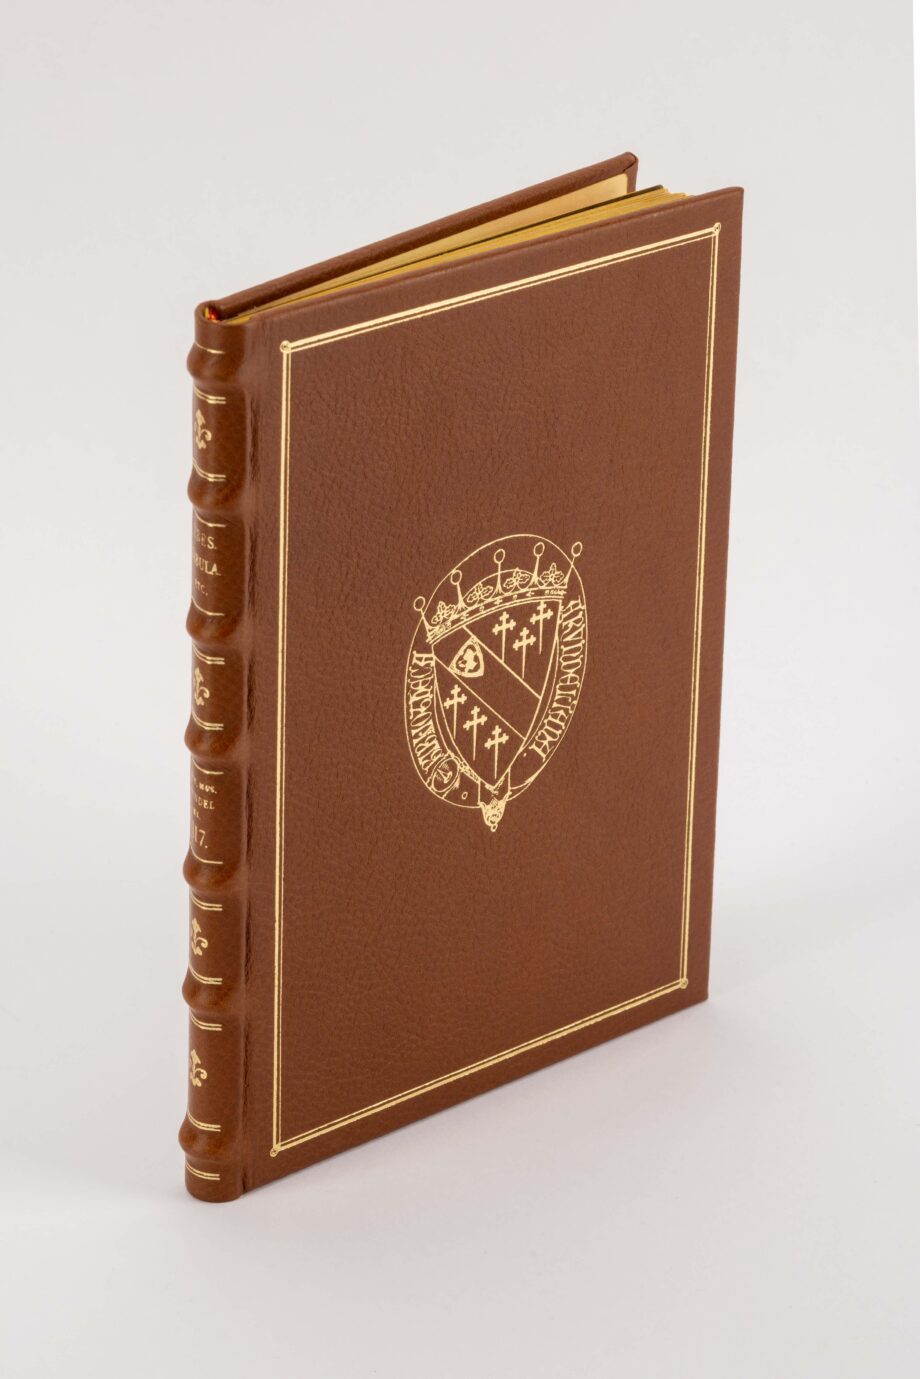 Faksimile-Ausgabe von der Tabula Cebetis mit goldgeprägten braunen Ledereinband.